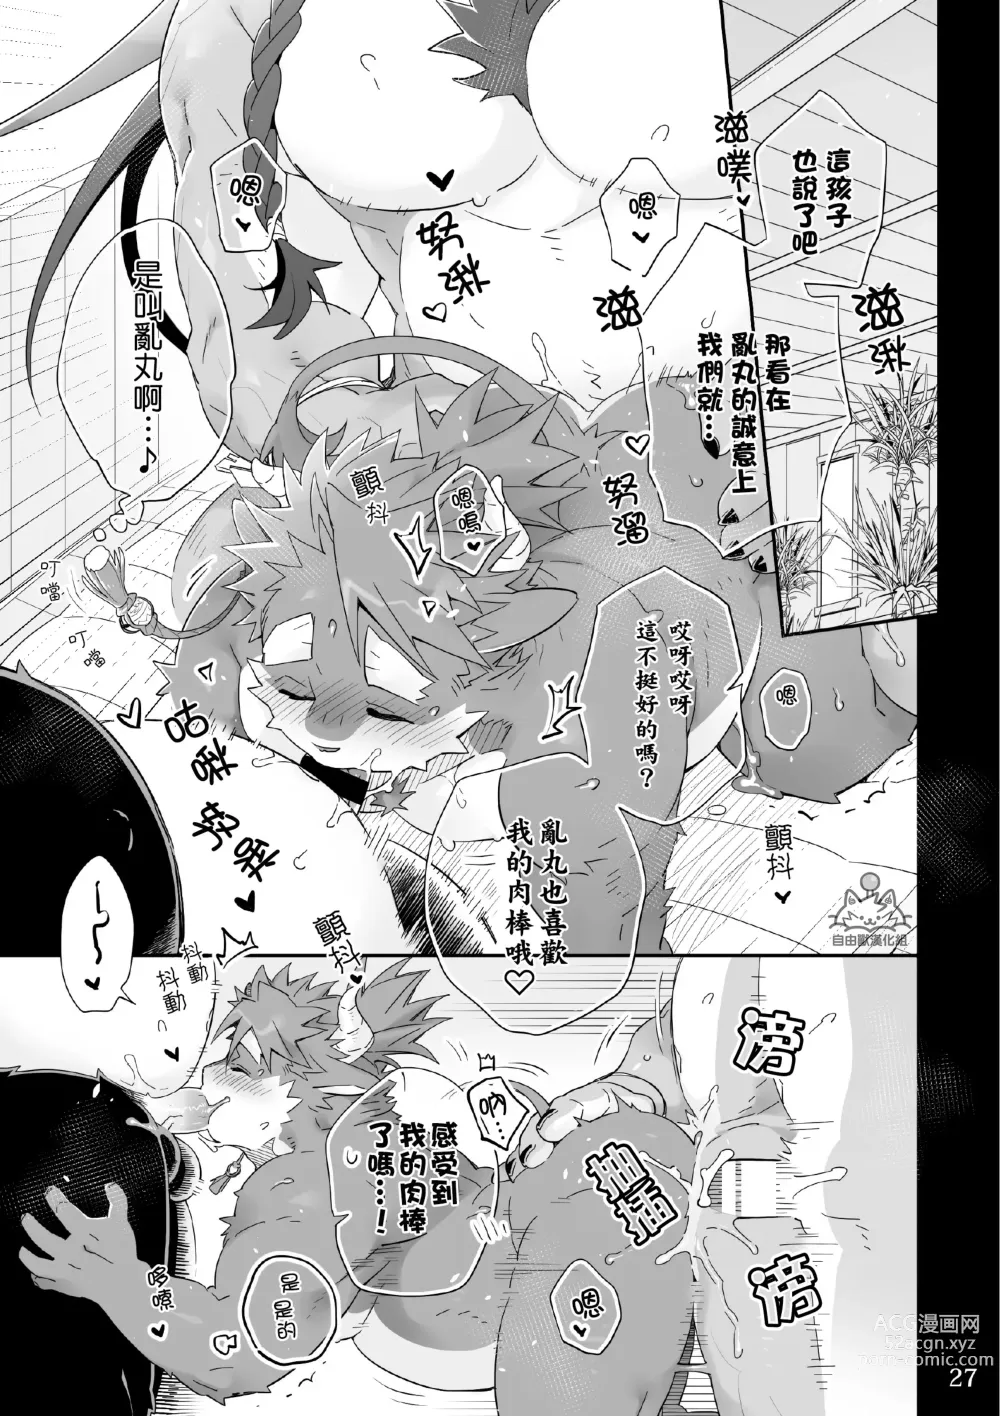 Page 26 of doujinshi Utopia